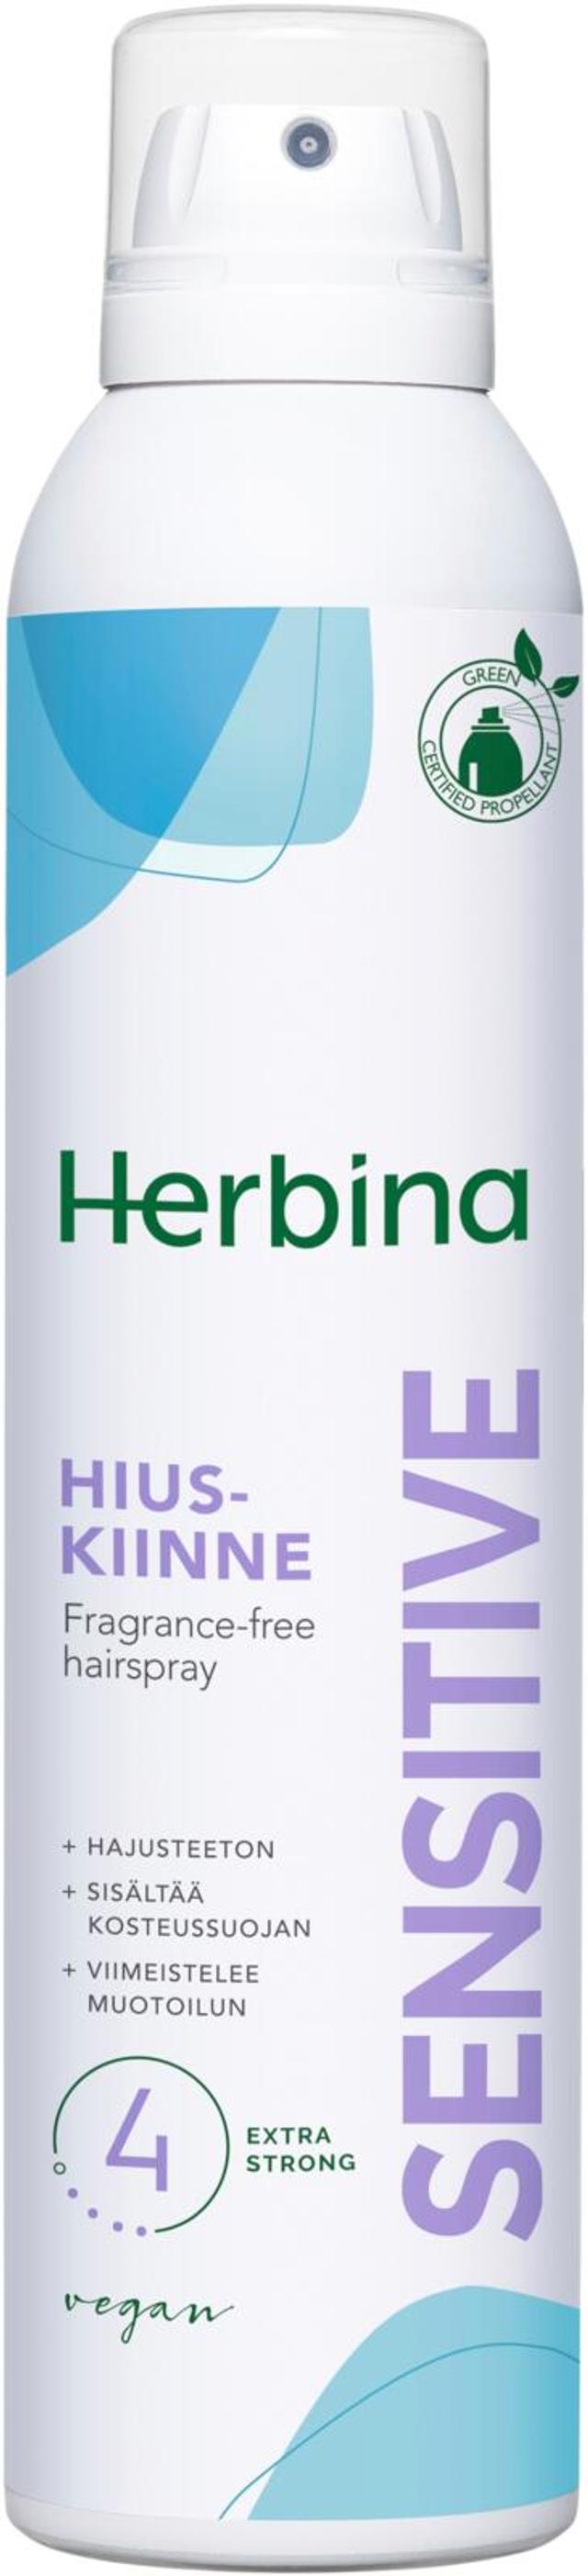 Herbina 250ml Sensitive erittäin voimakas hajusteeton hiuskiinne